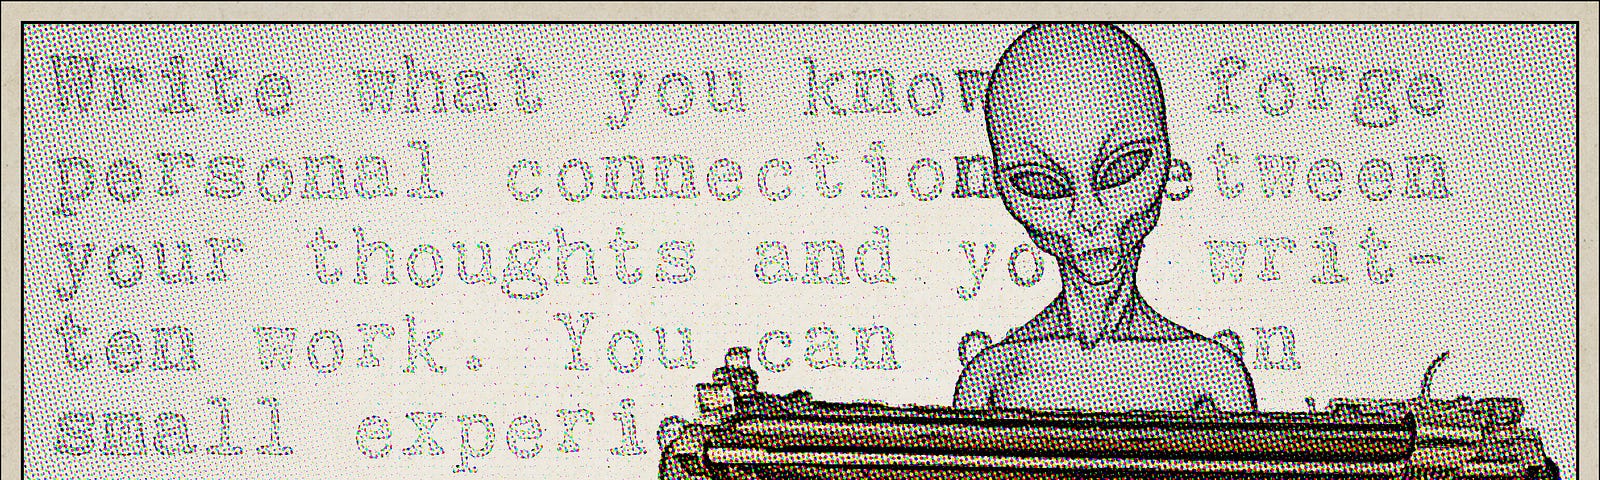 Alien at manual typewriter